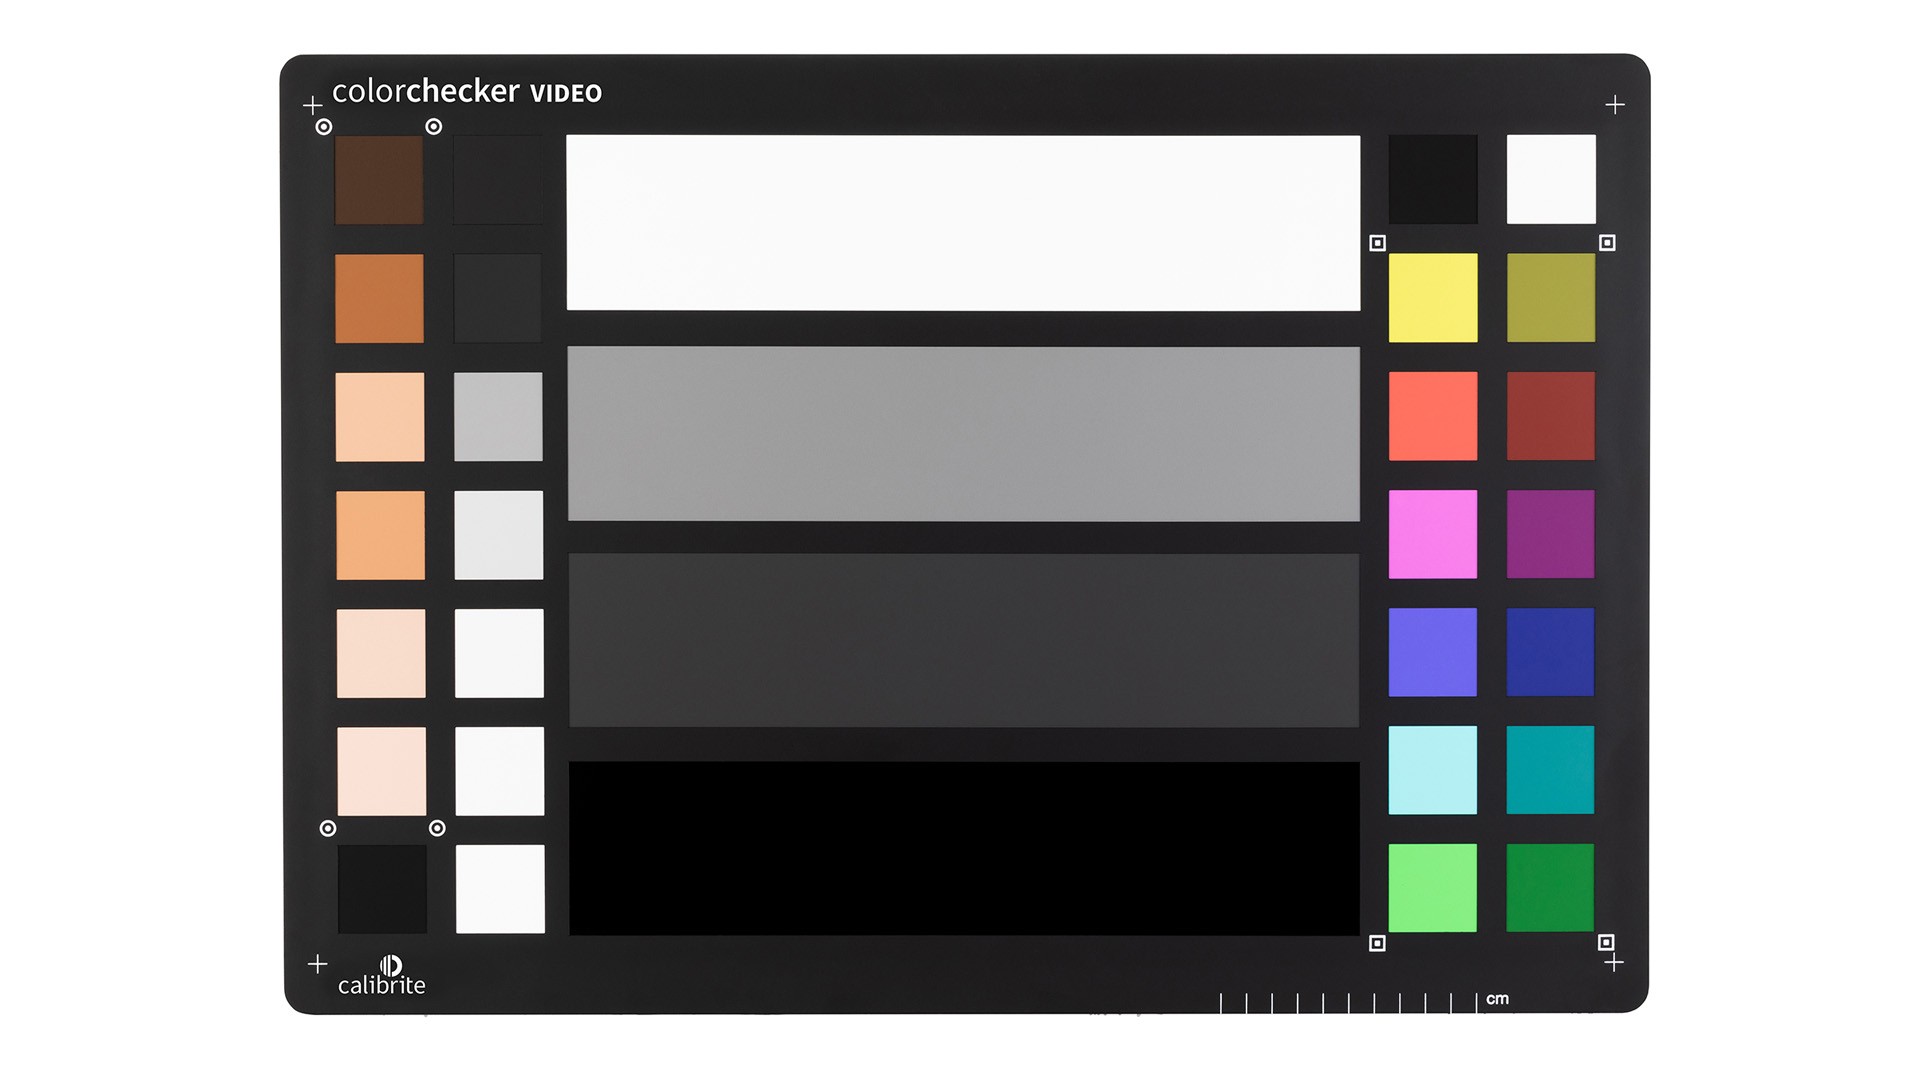 Calibrarea culorii / Profilare - Calibrite ColorChecker Video XL, transilvae.ro